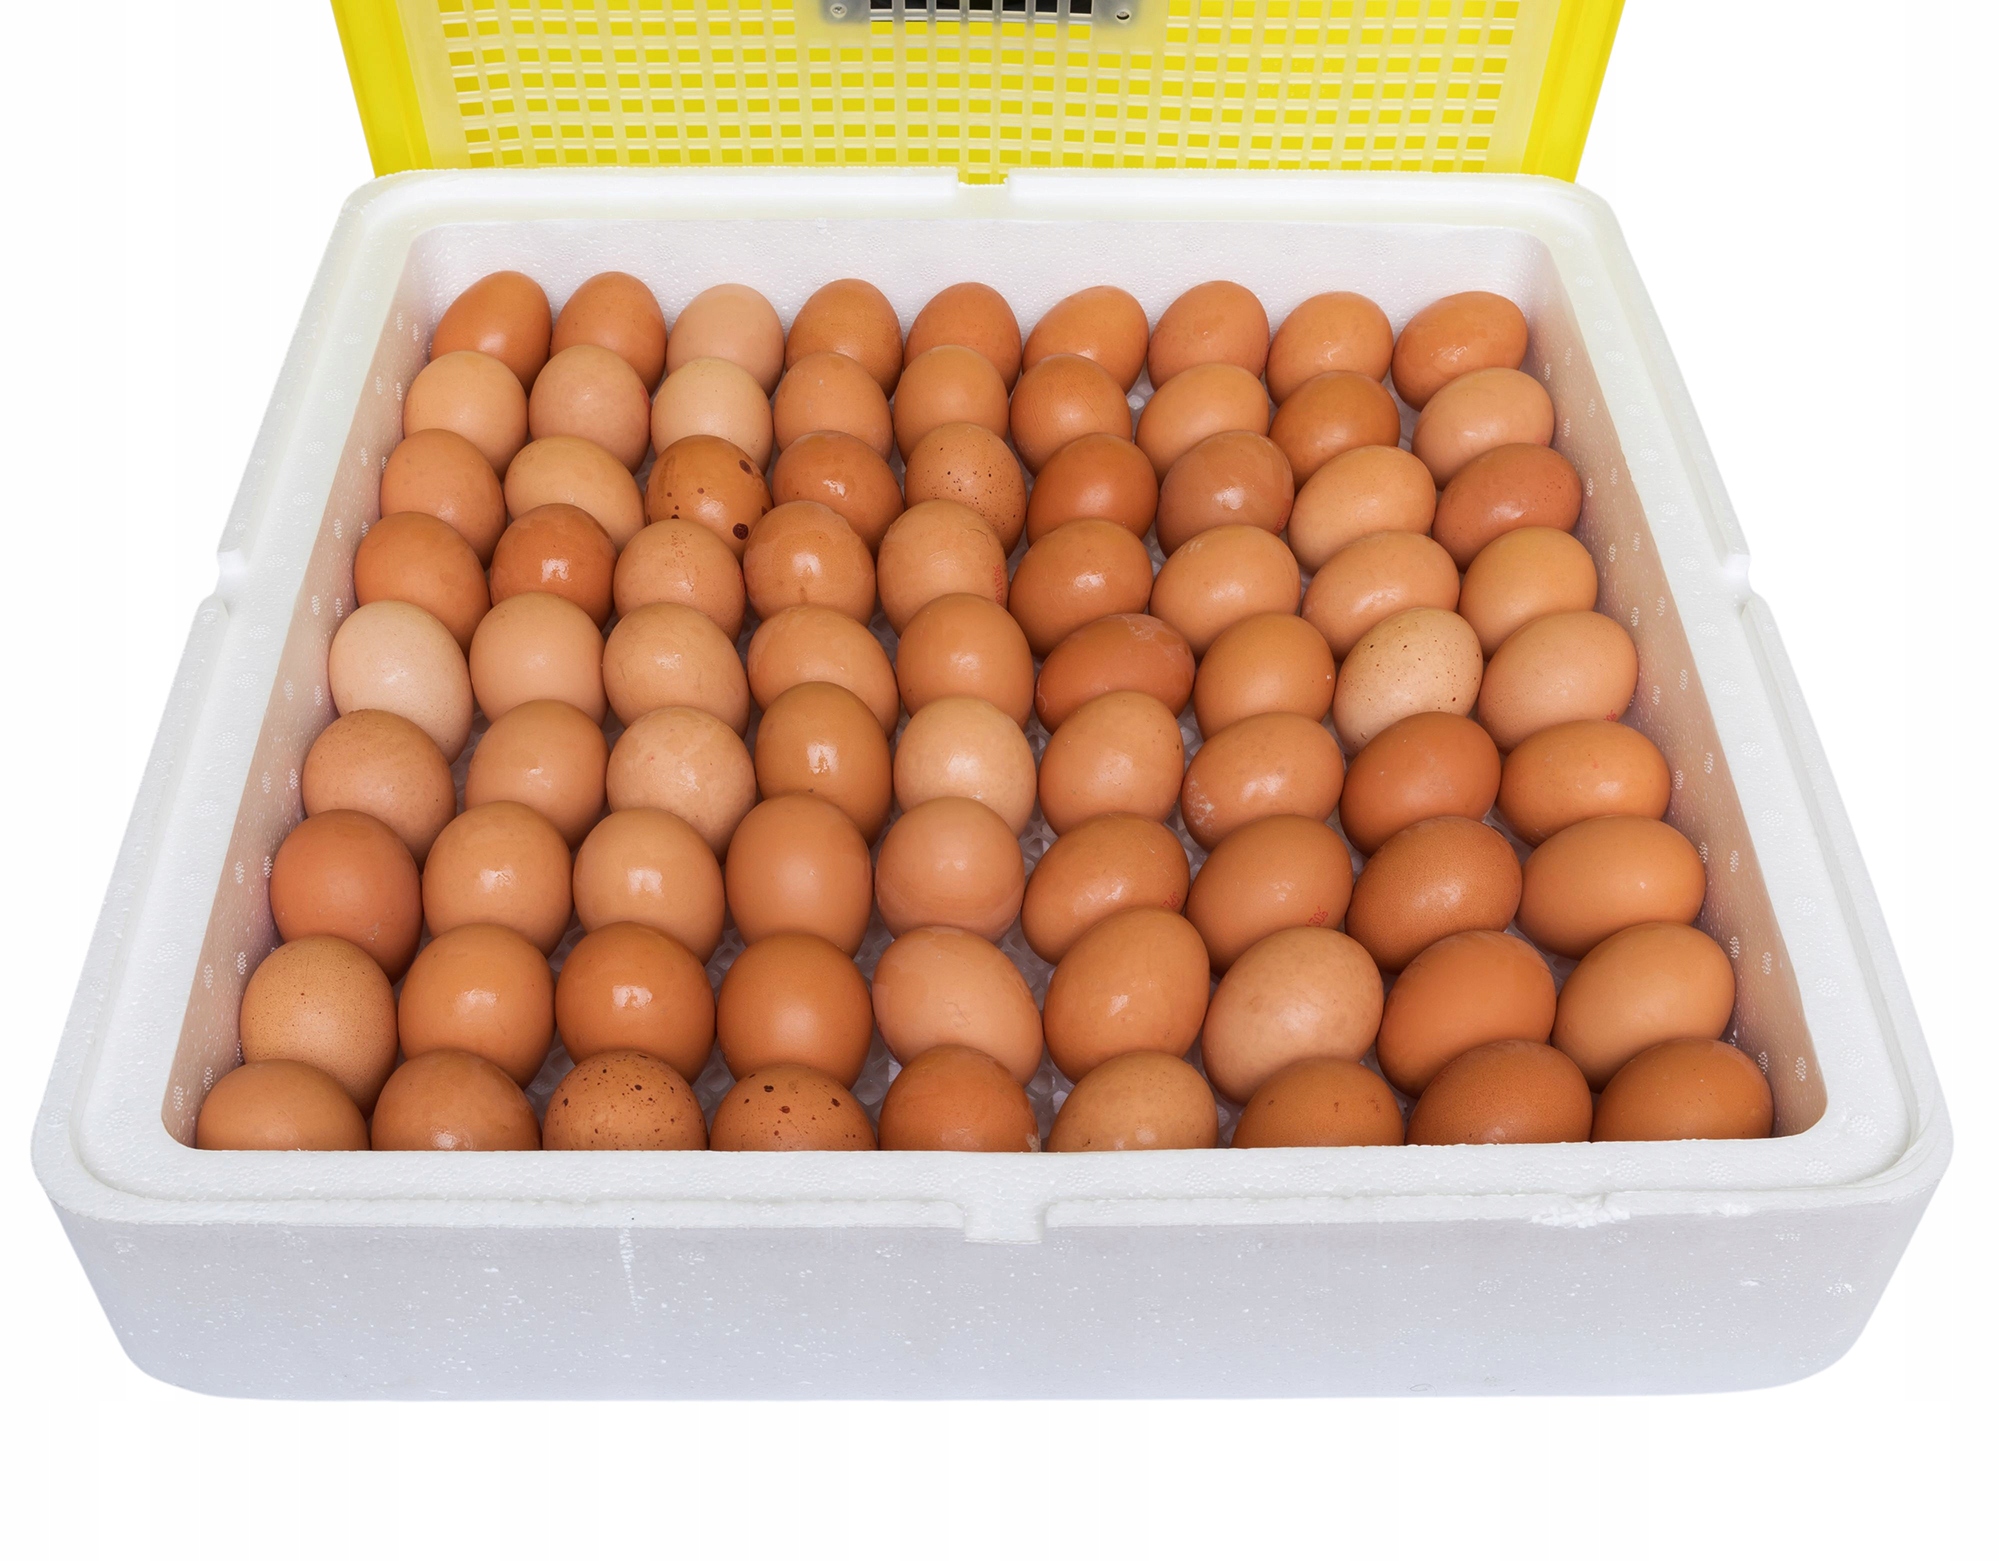 INKUBATOR KLUJNIK WYLĘGARKA JAJ WYLĘGU DROBIU 88 j Przeznaczenie jaja gęsie jaja indycze jaja kacze jaja kurze jaja pawie jaja perlicze jaja przepiórcze uniwersalne